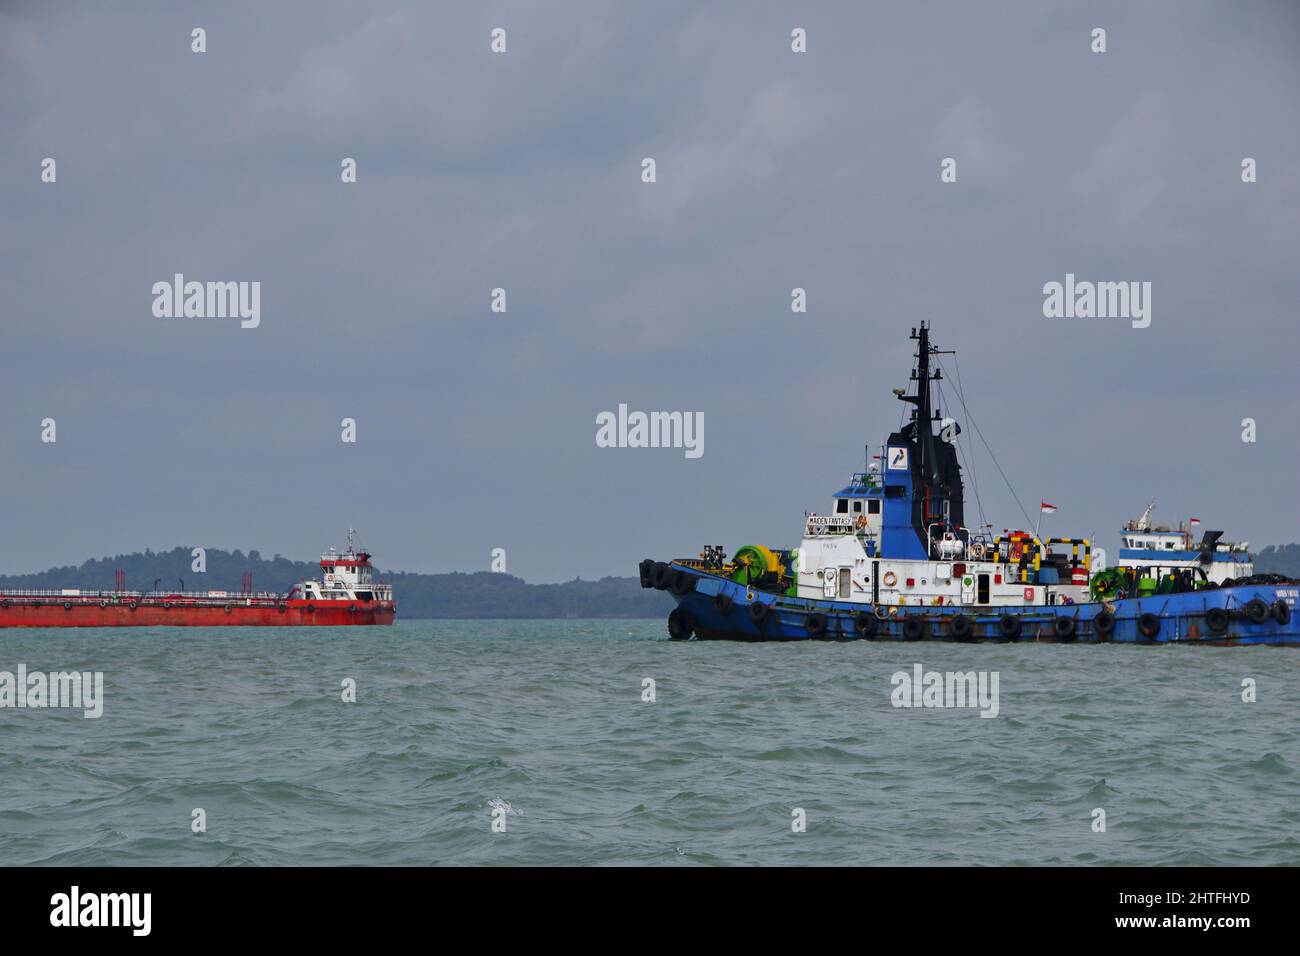 Bateau à vapeur naviguant dans la mer. Manœuvres en remorqueurs, îles Tanjung Pinang Riau, 6 août 2019 Banque D'Images